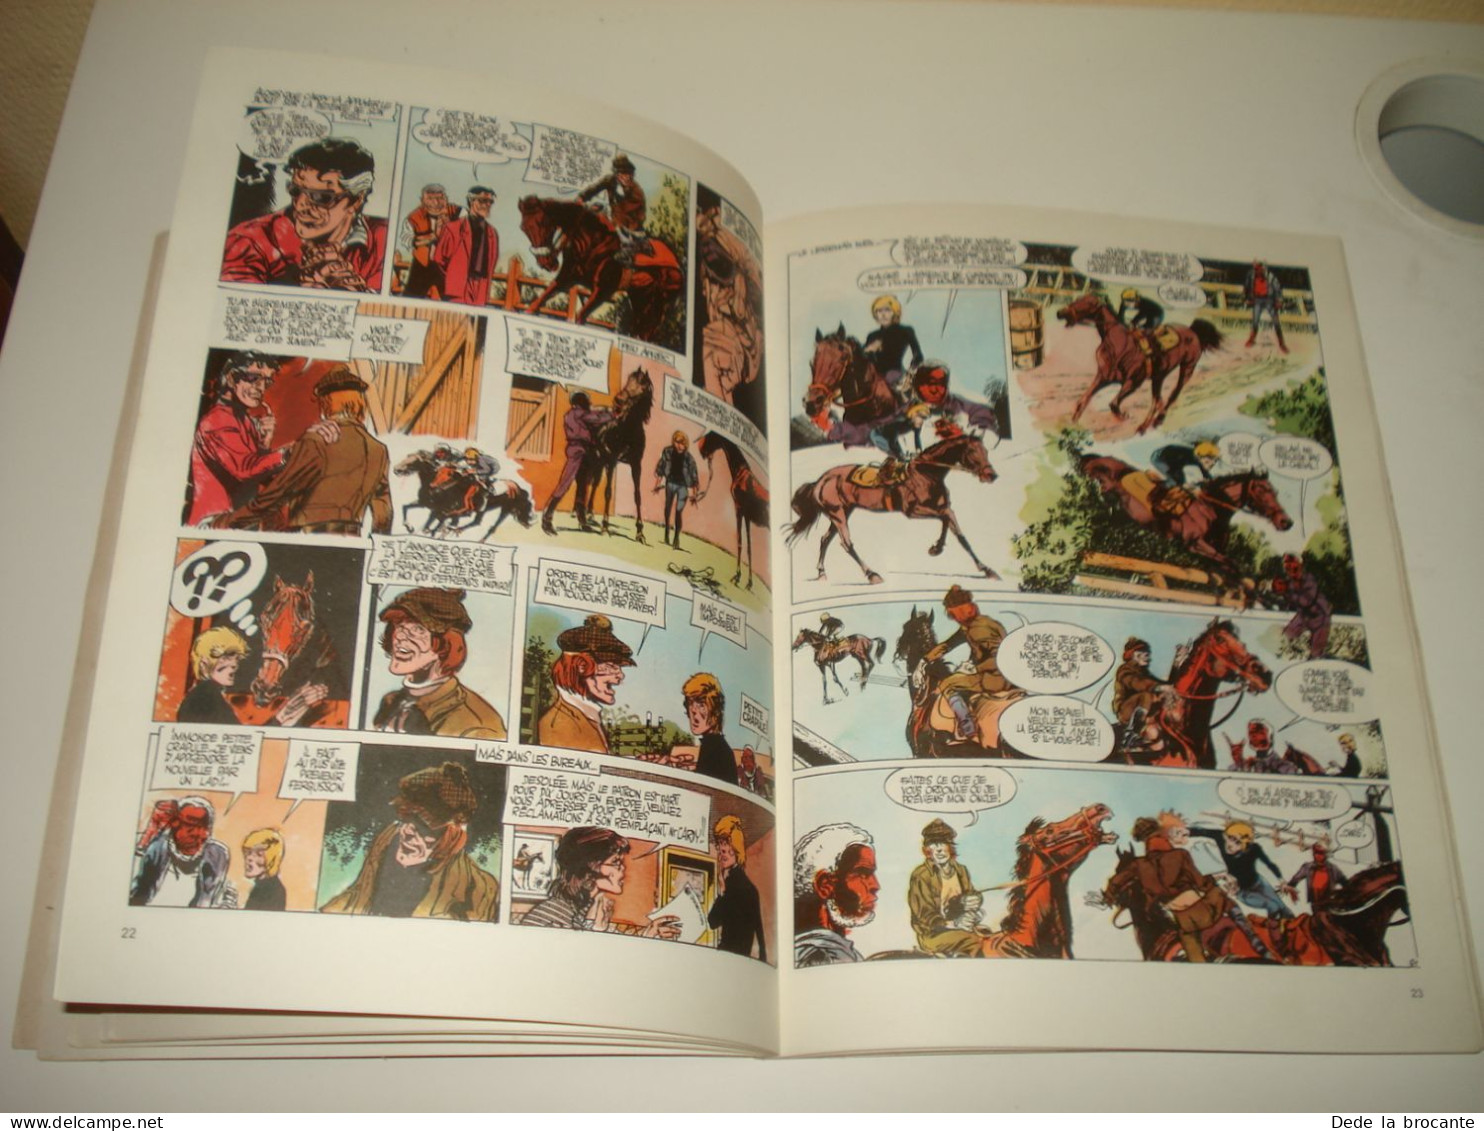 C55 ( 2 ) / Les aventures de Christopher " Graine de jockey " - EO de 1973